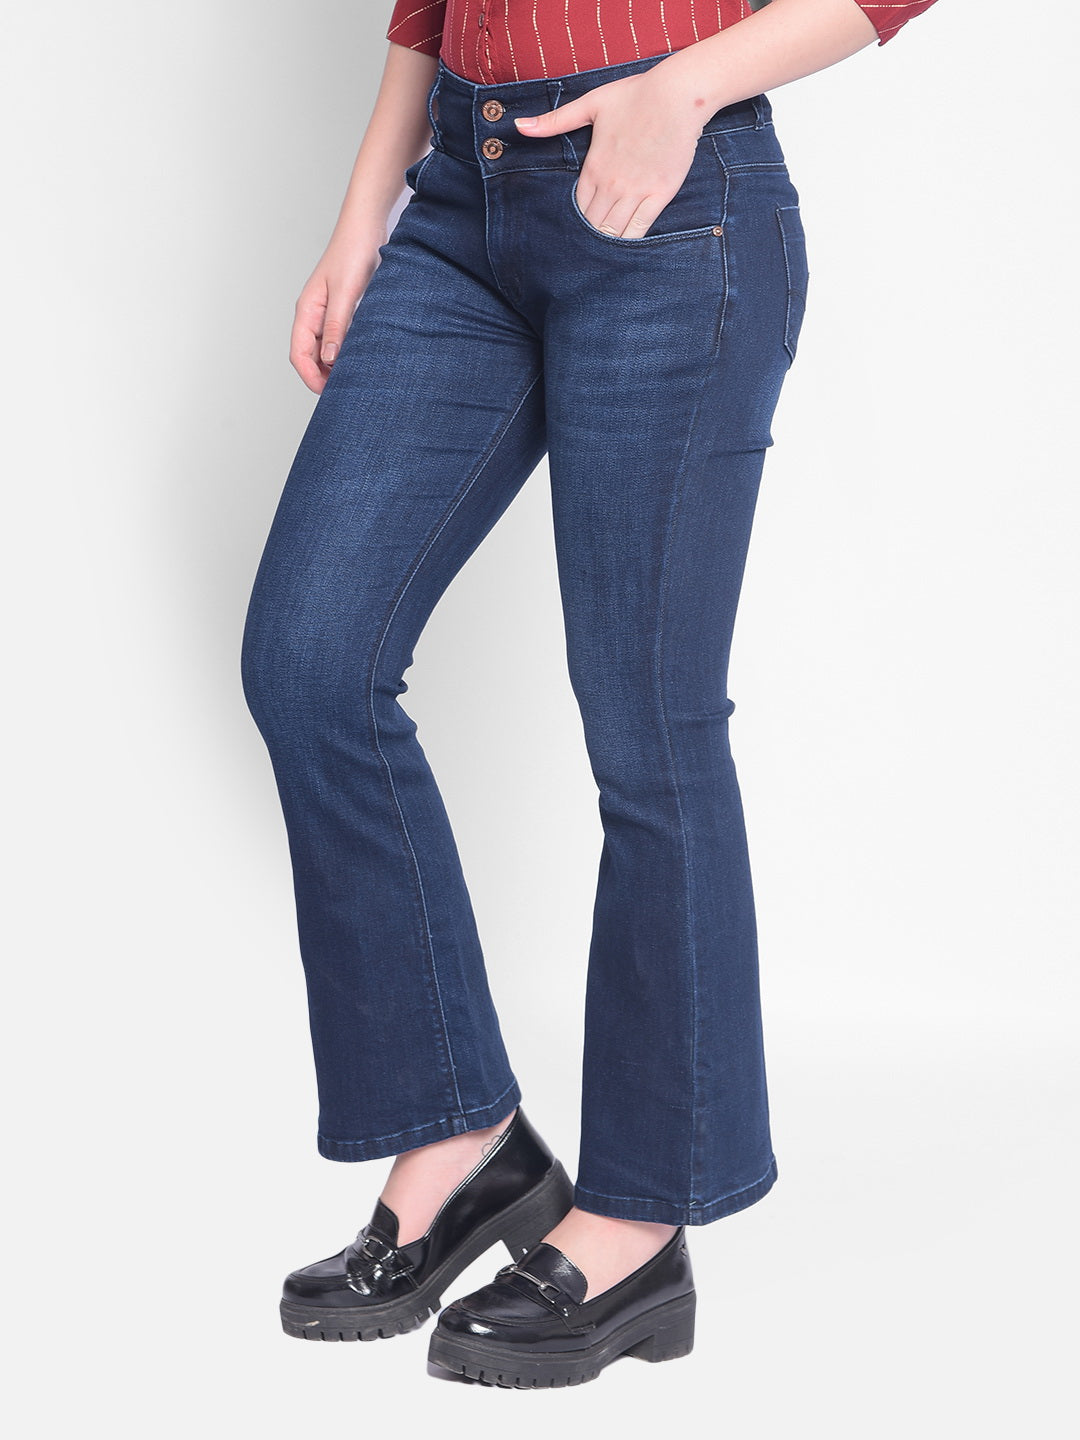 Blue Bootcut Jeans-Women Jeans-Crimsoune Club